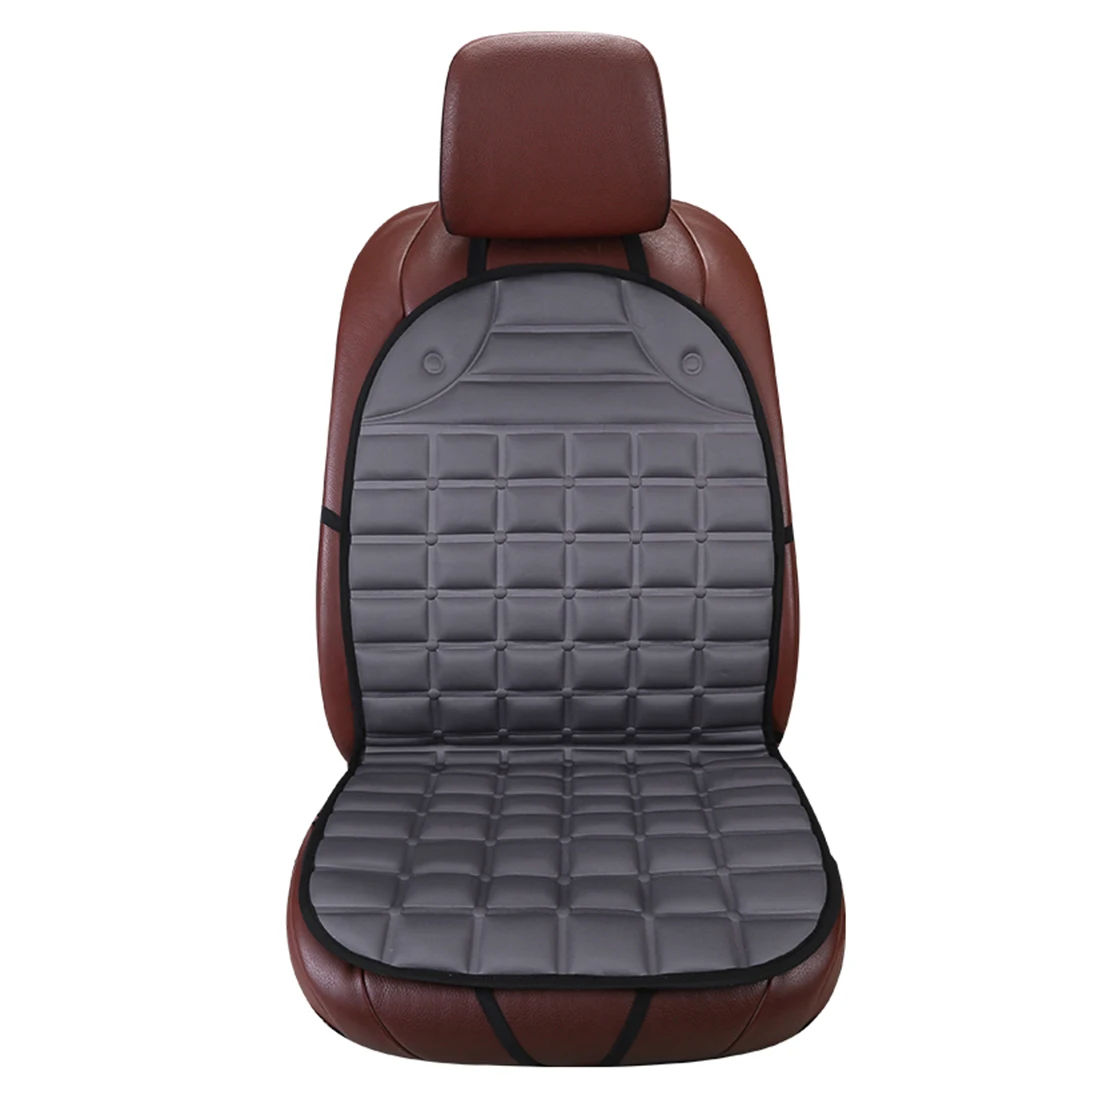 Dewtreetali чехол для автомобильного сиденья, универсальный протектор для переднего автомобильного сиденья, зимняя подушка, черный, серый цвет, для автомобиля, Стайлинг для Renault Logan - Название цвета: Gray Plaid